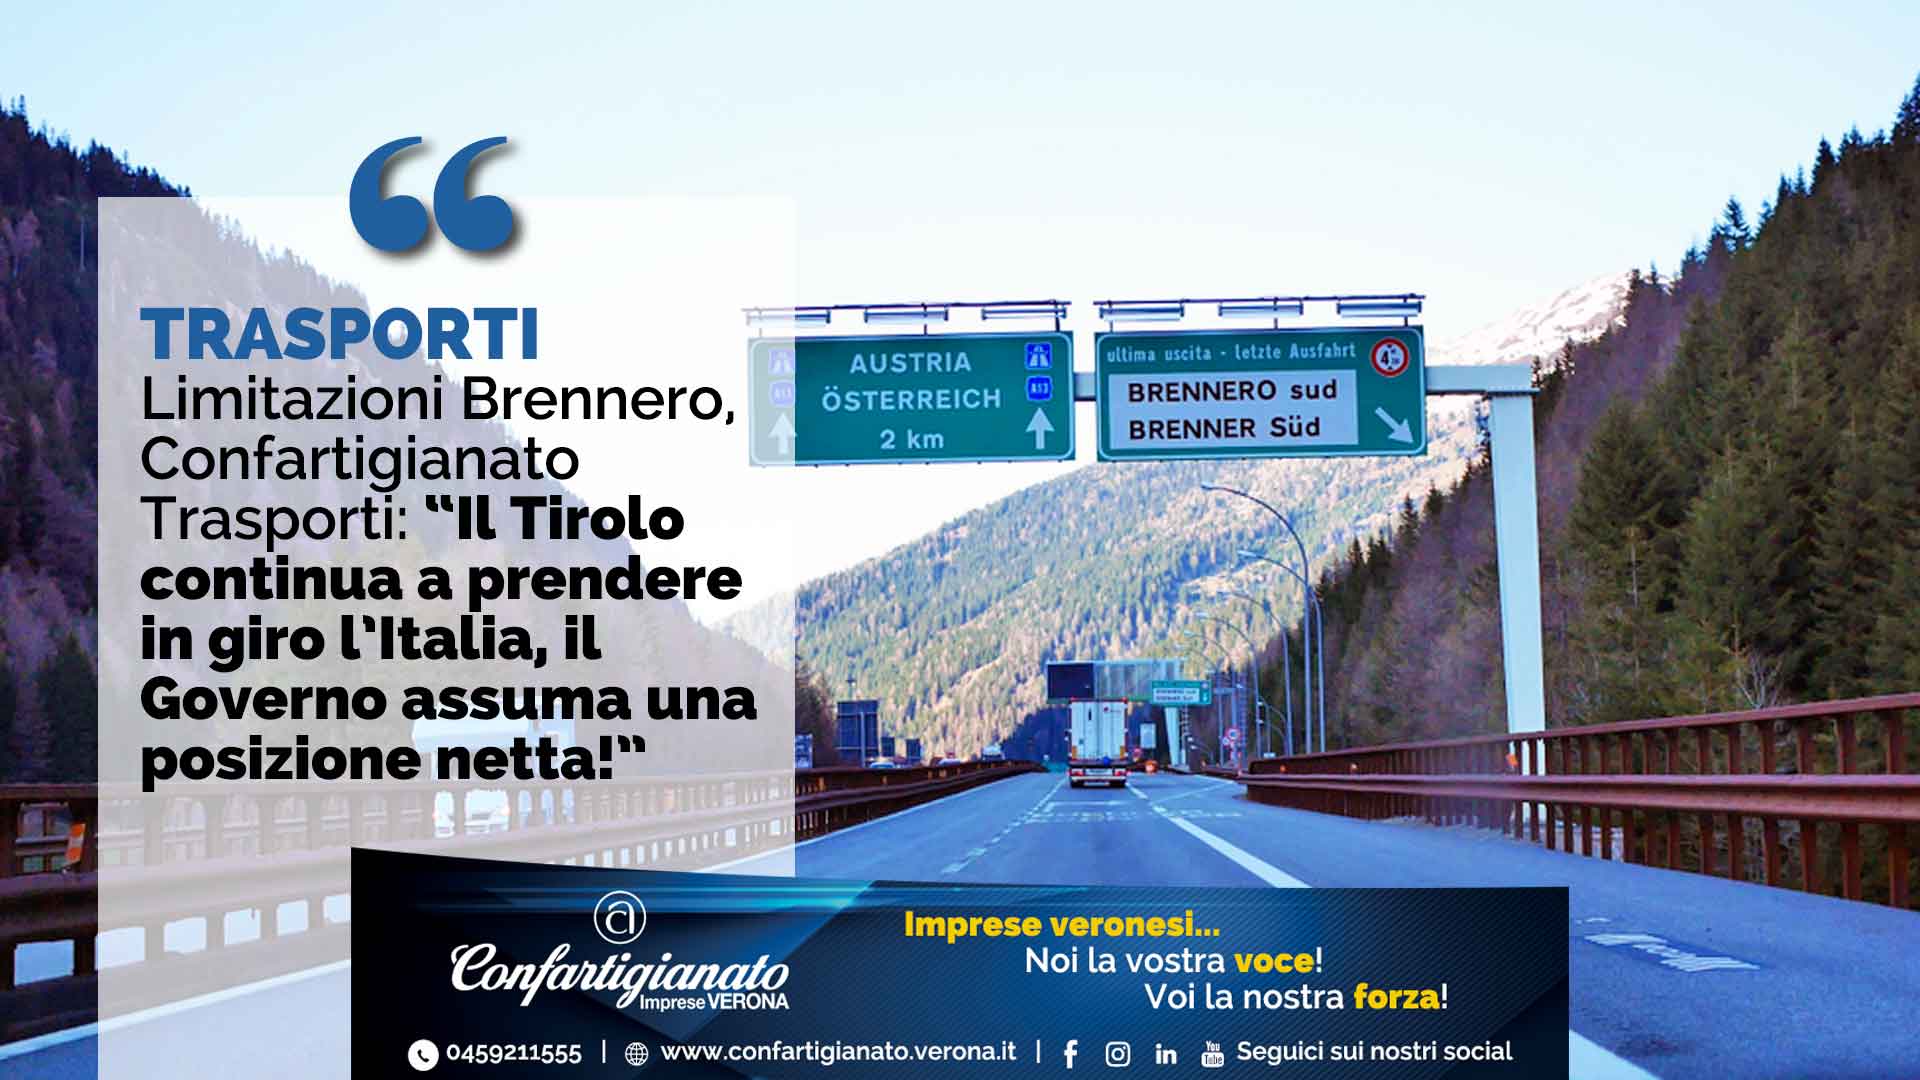 TRASPORTI – Limitazioni Brennero, Confartigianato Trasporti: “Il Tirolo continua a prendere in giro l’Italia, il Governo Conte assuma posizione netta”